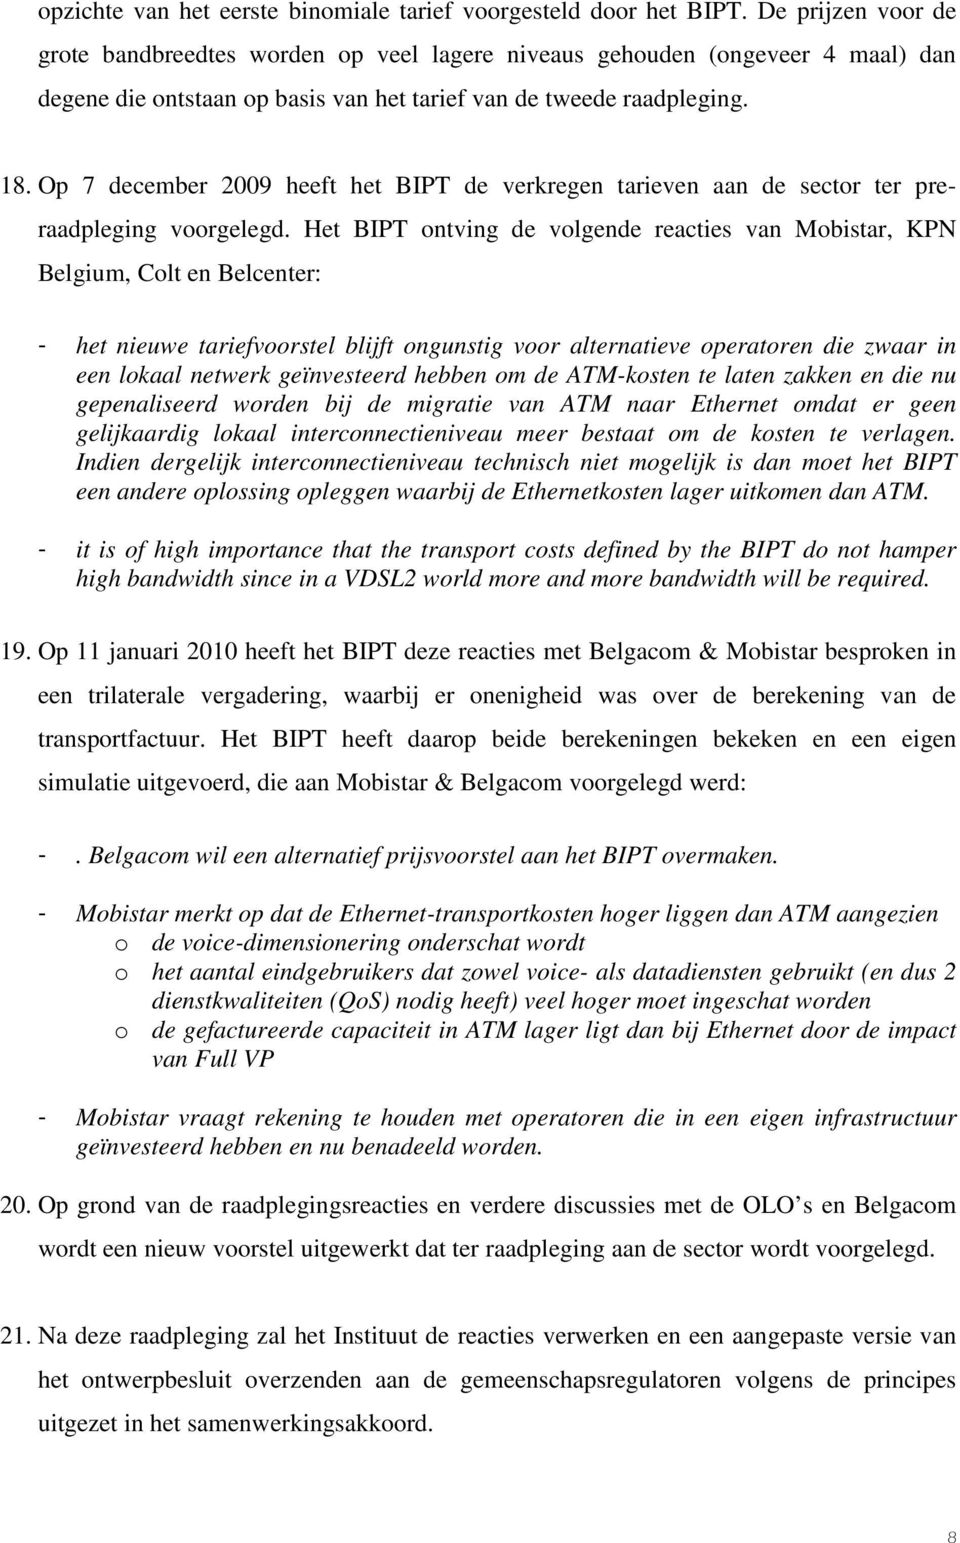 Op 7 december 2009 heeft het BIPT de verkregen tarieven aan de sector ter preraadpleging voorgelegd.